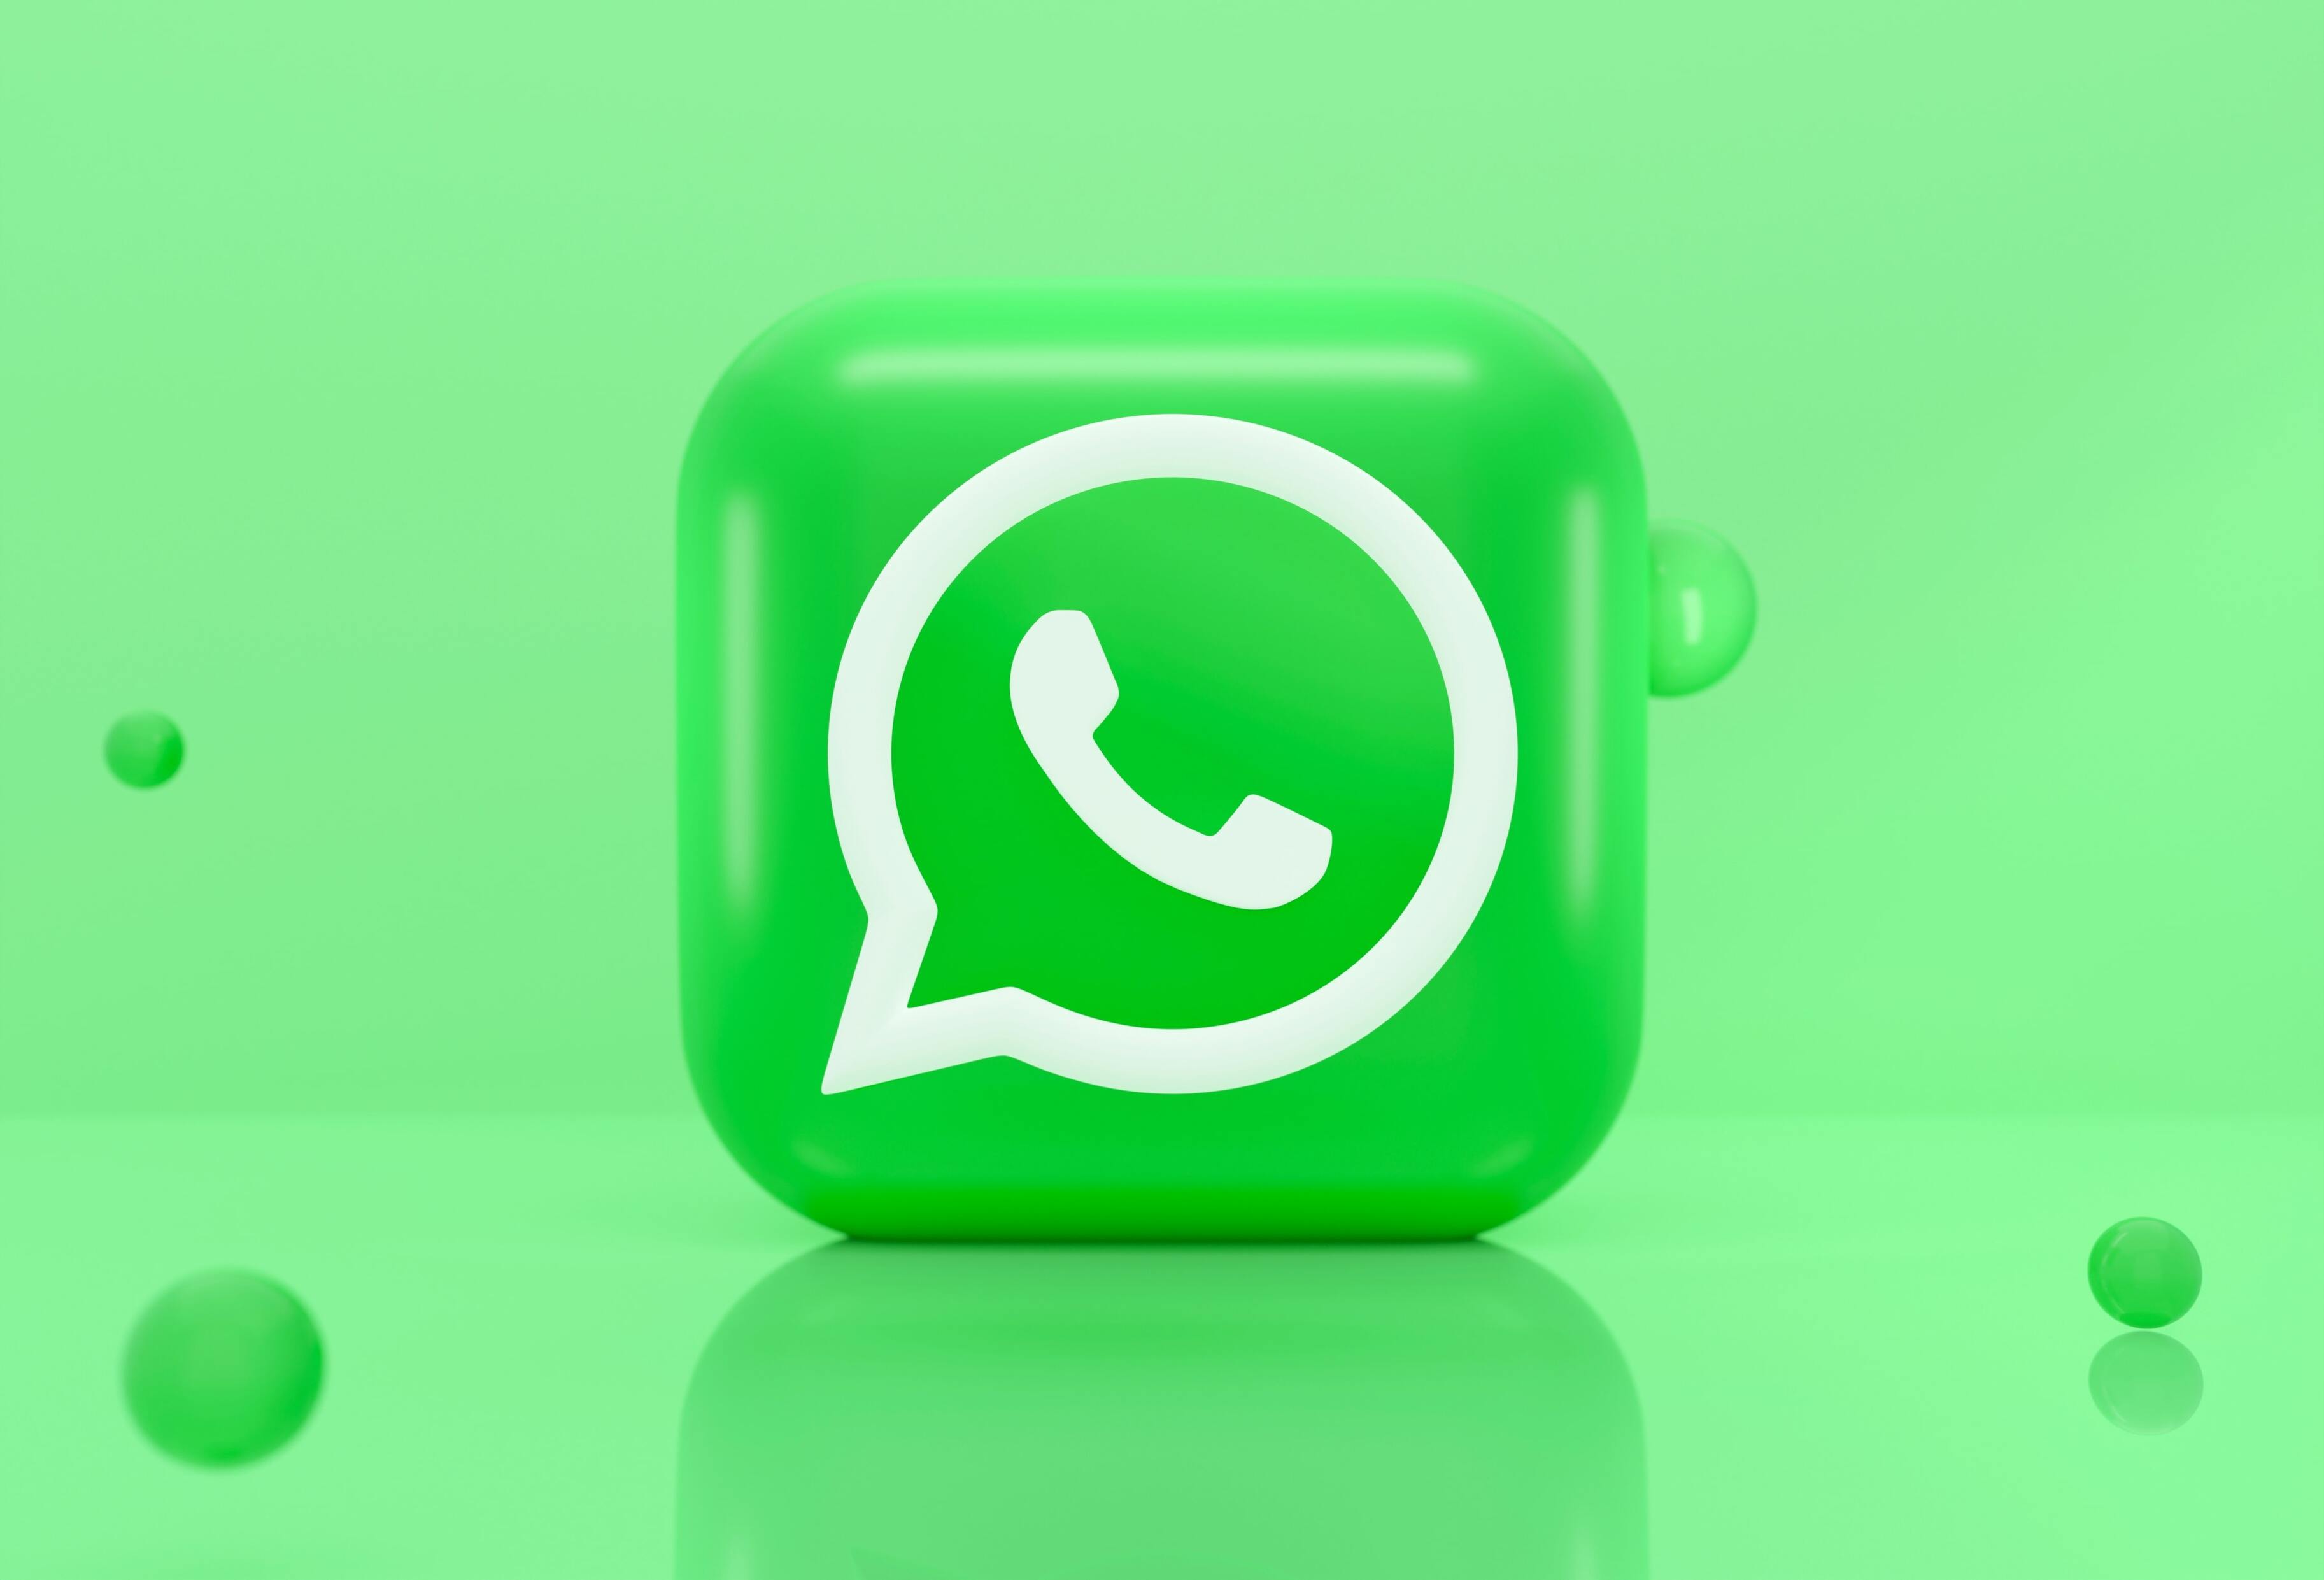 Концепт показал, как WhatsApp мог бы стать удобнее